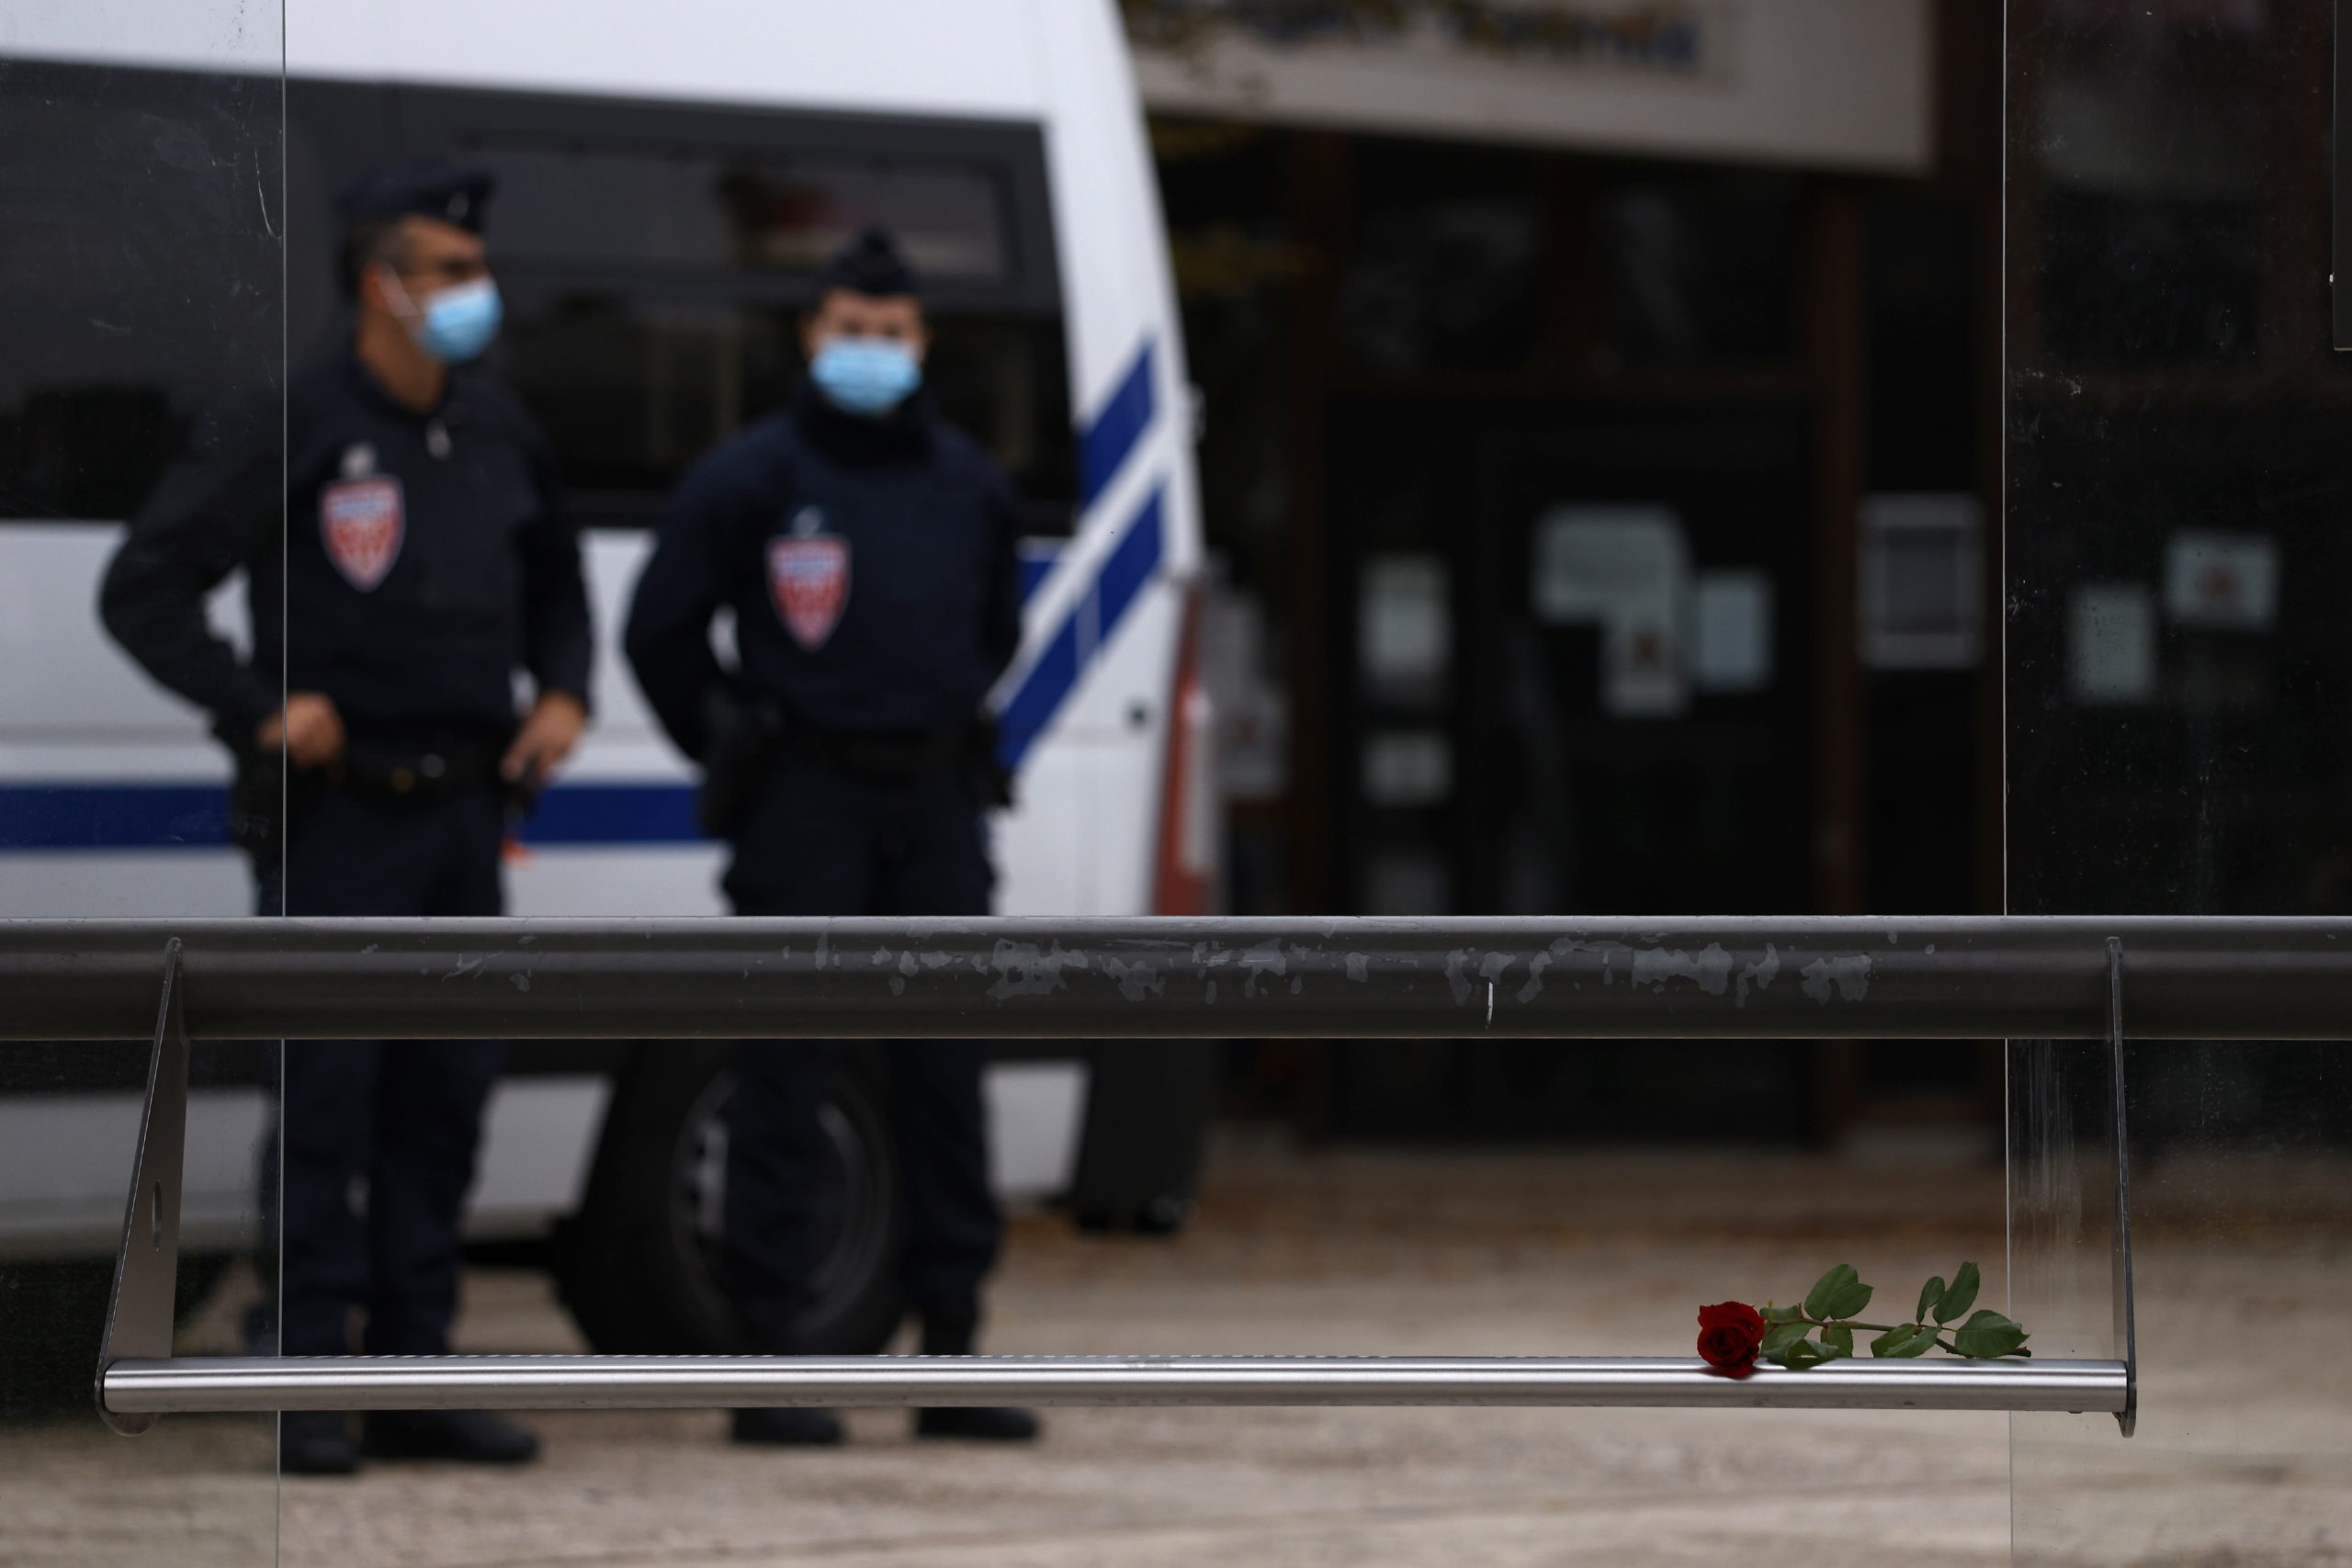 Παρίσι δολοφονία καθηγητή: Συγκλονιστικά στοιχεία έδωσε ο εισαγγελέας - Τί έγραψε στο Twitter ο δράστης